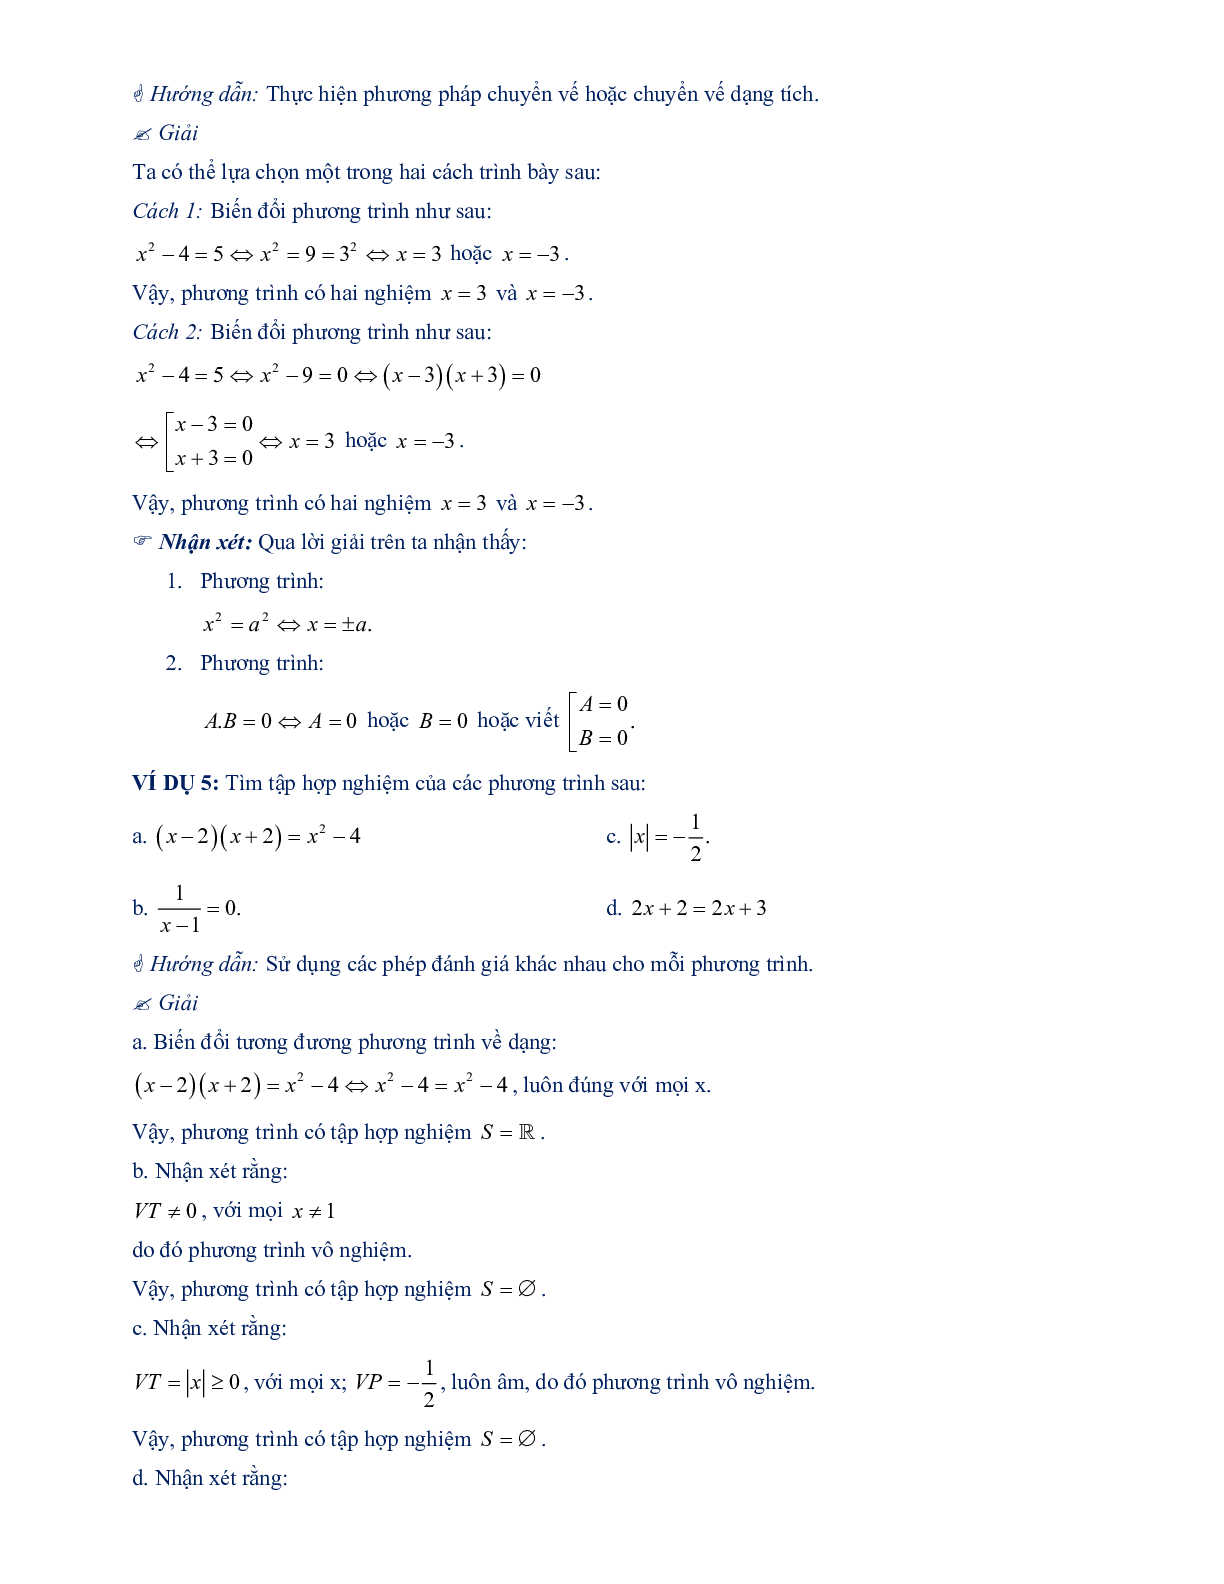 Chuyên đề mở đầu về phương trình (trang 5)